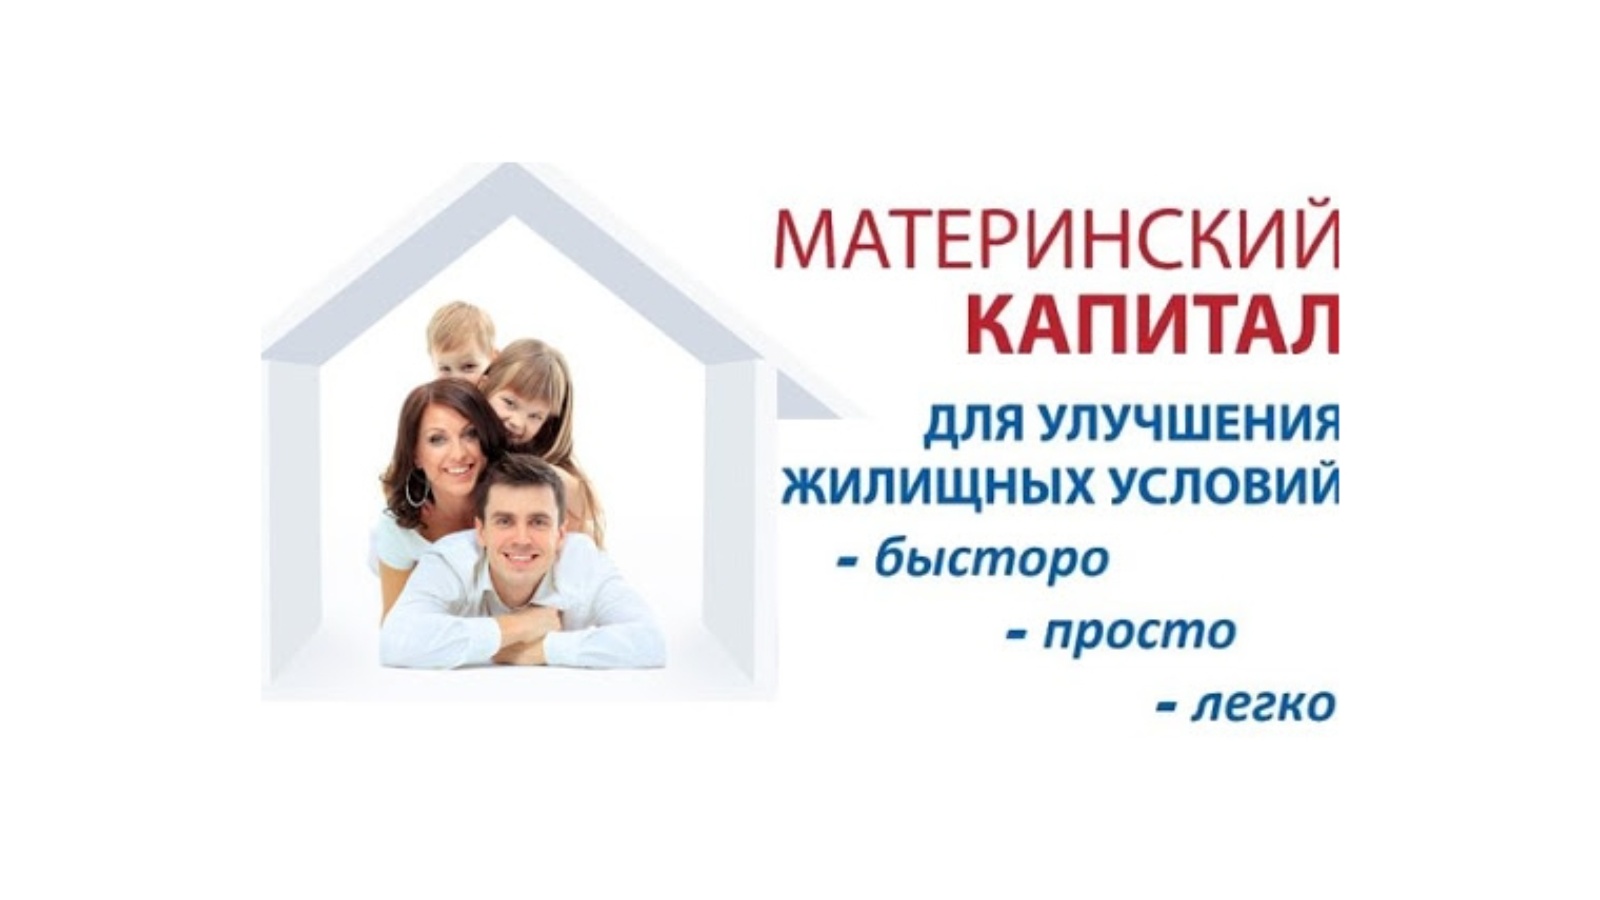 На Ставрополье 2 тысячи семей улучшили жилищные условия за счет материнского капитала.